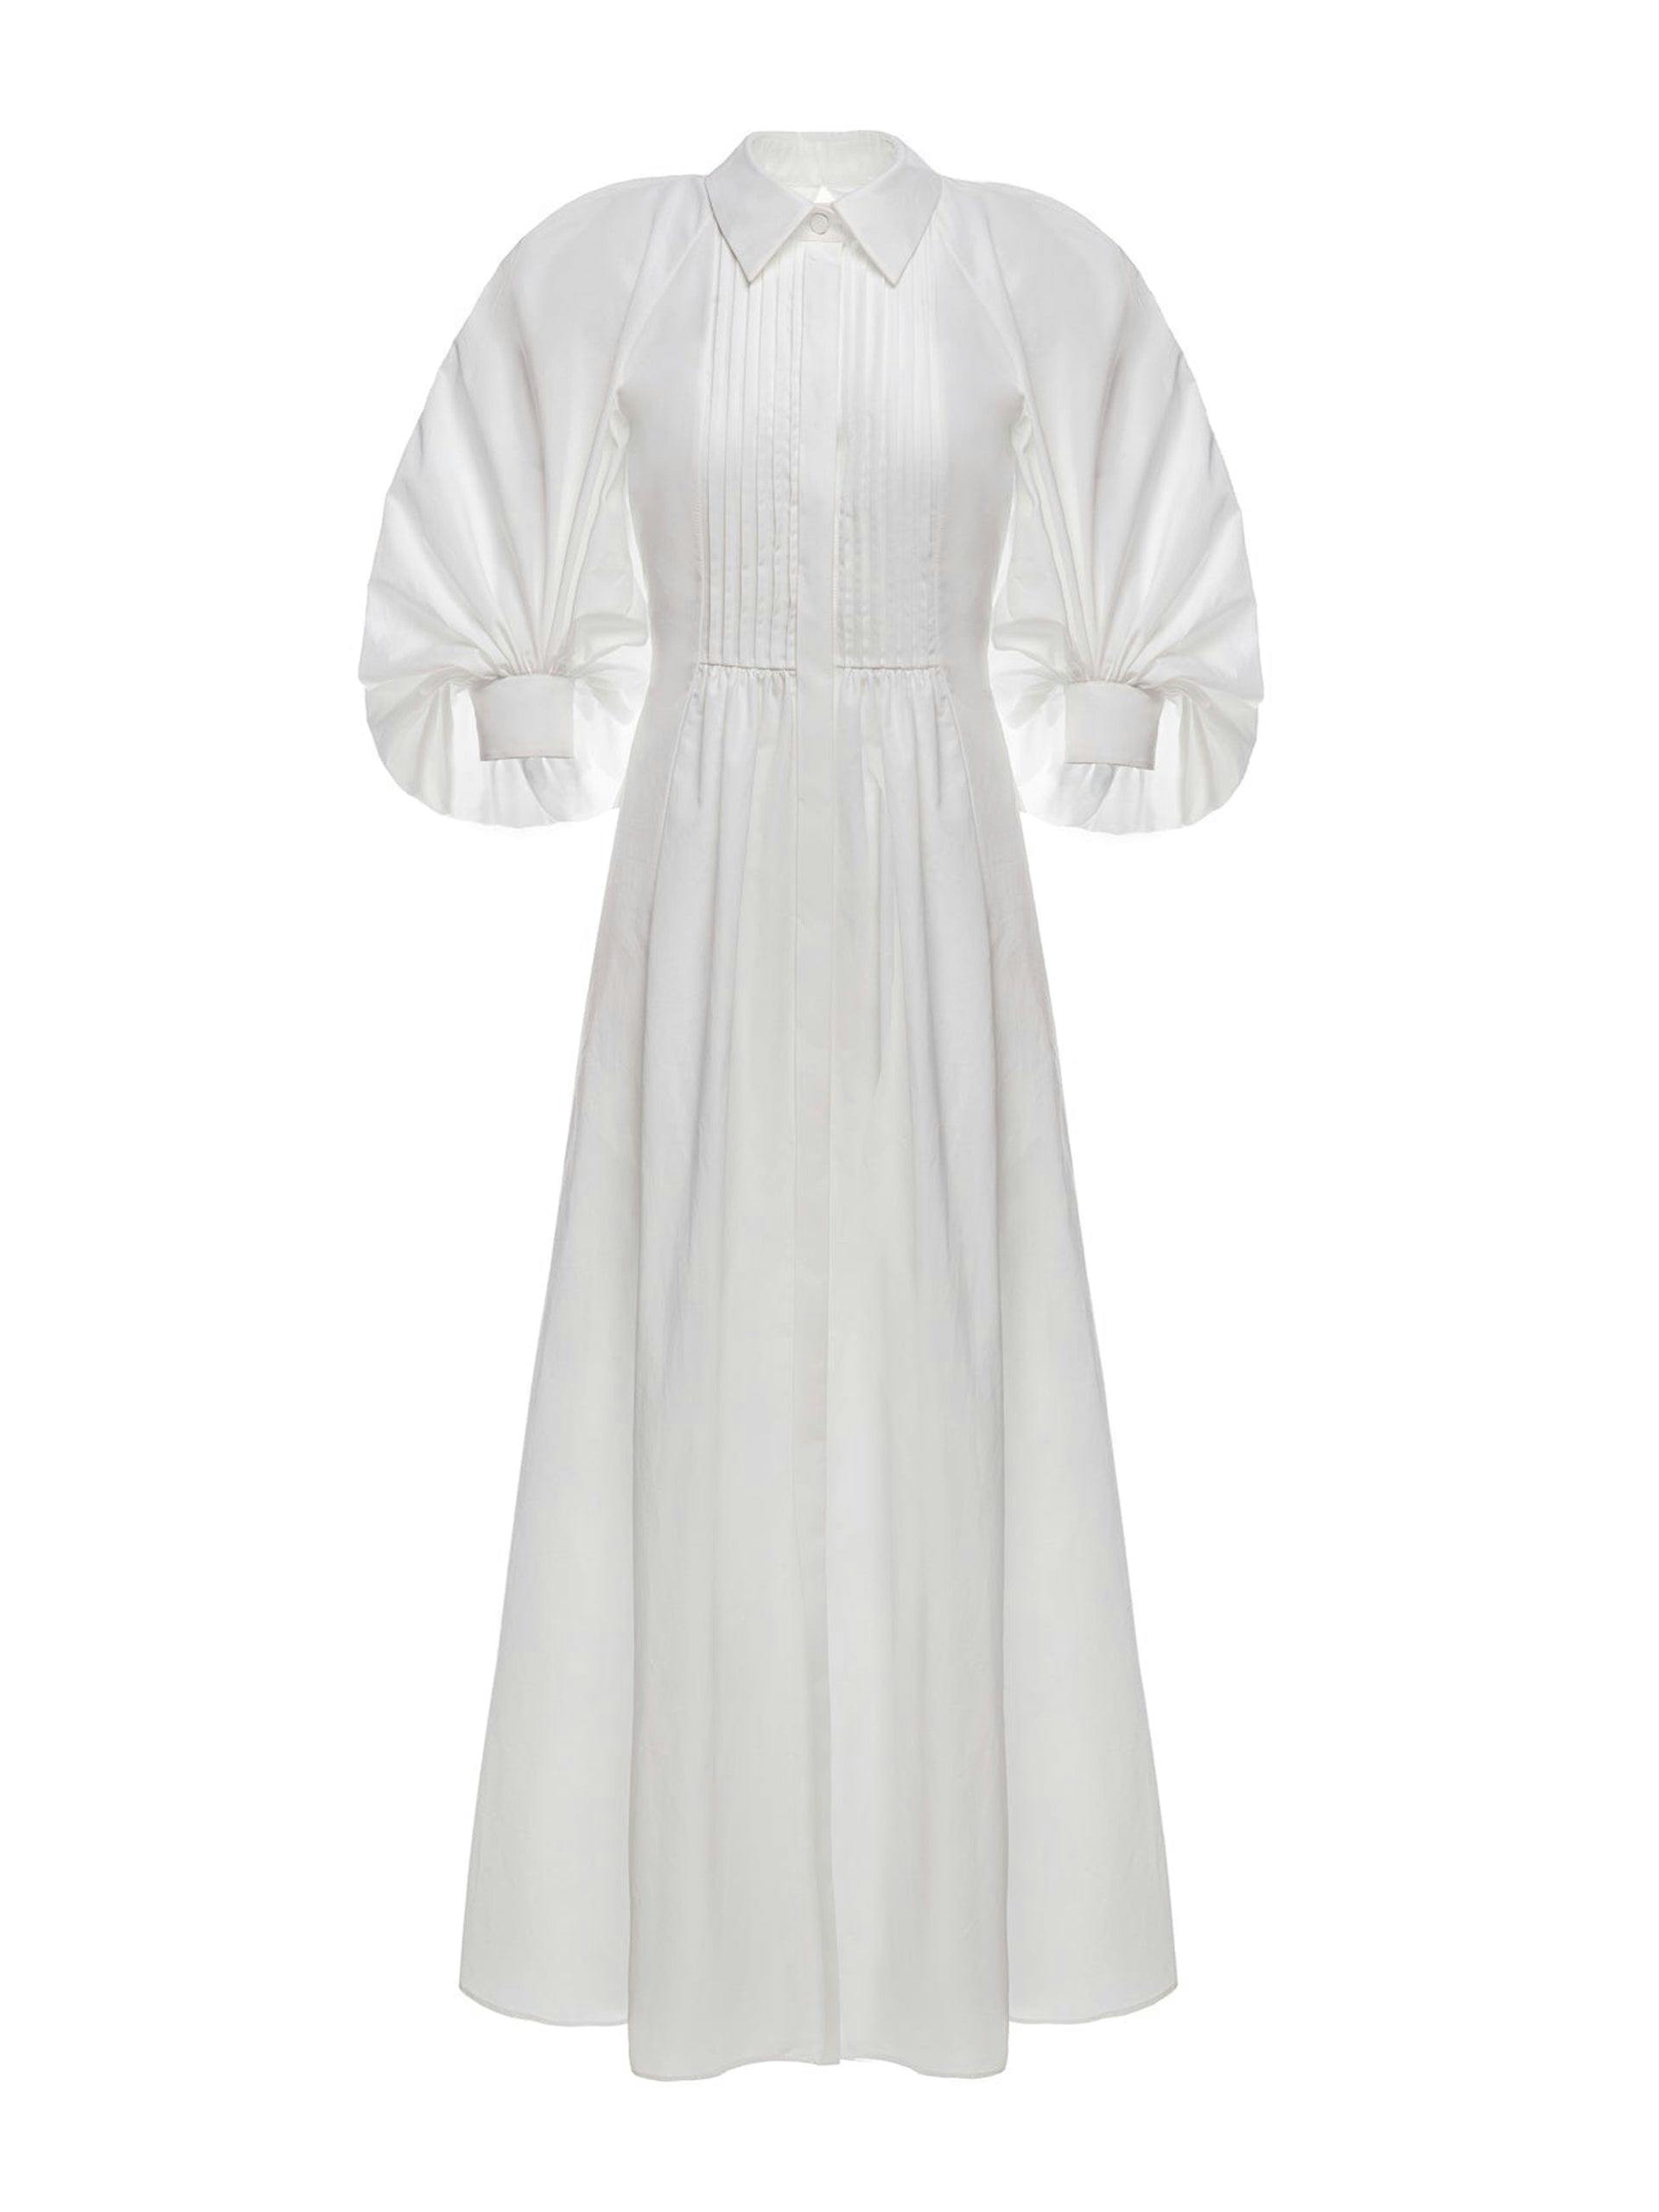 Pat white cotton dress